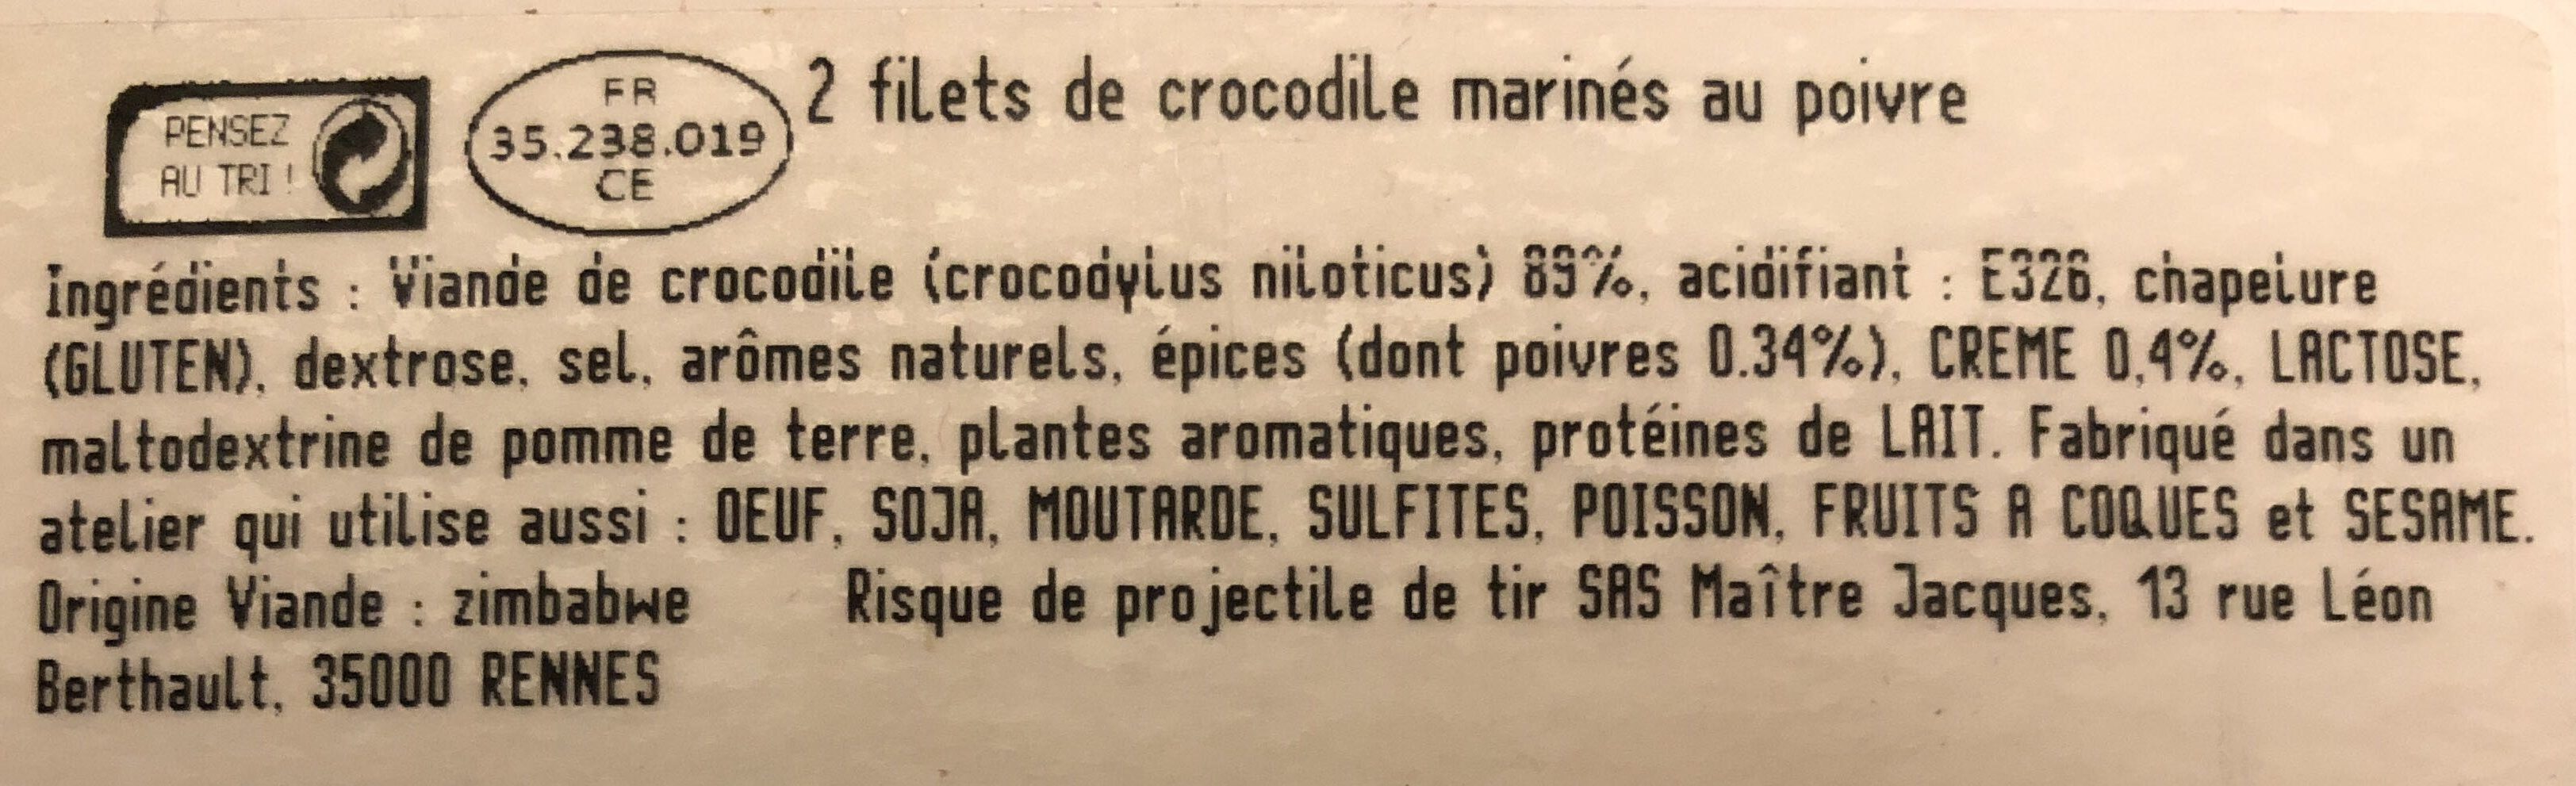 Filets de Crocodile Crème 3 poivres - Ingredients - fr